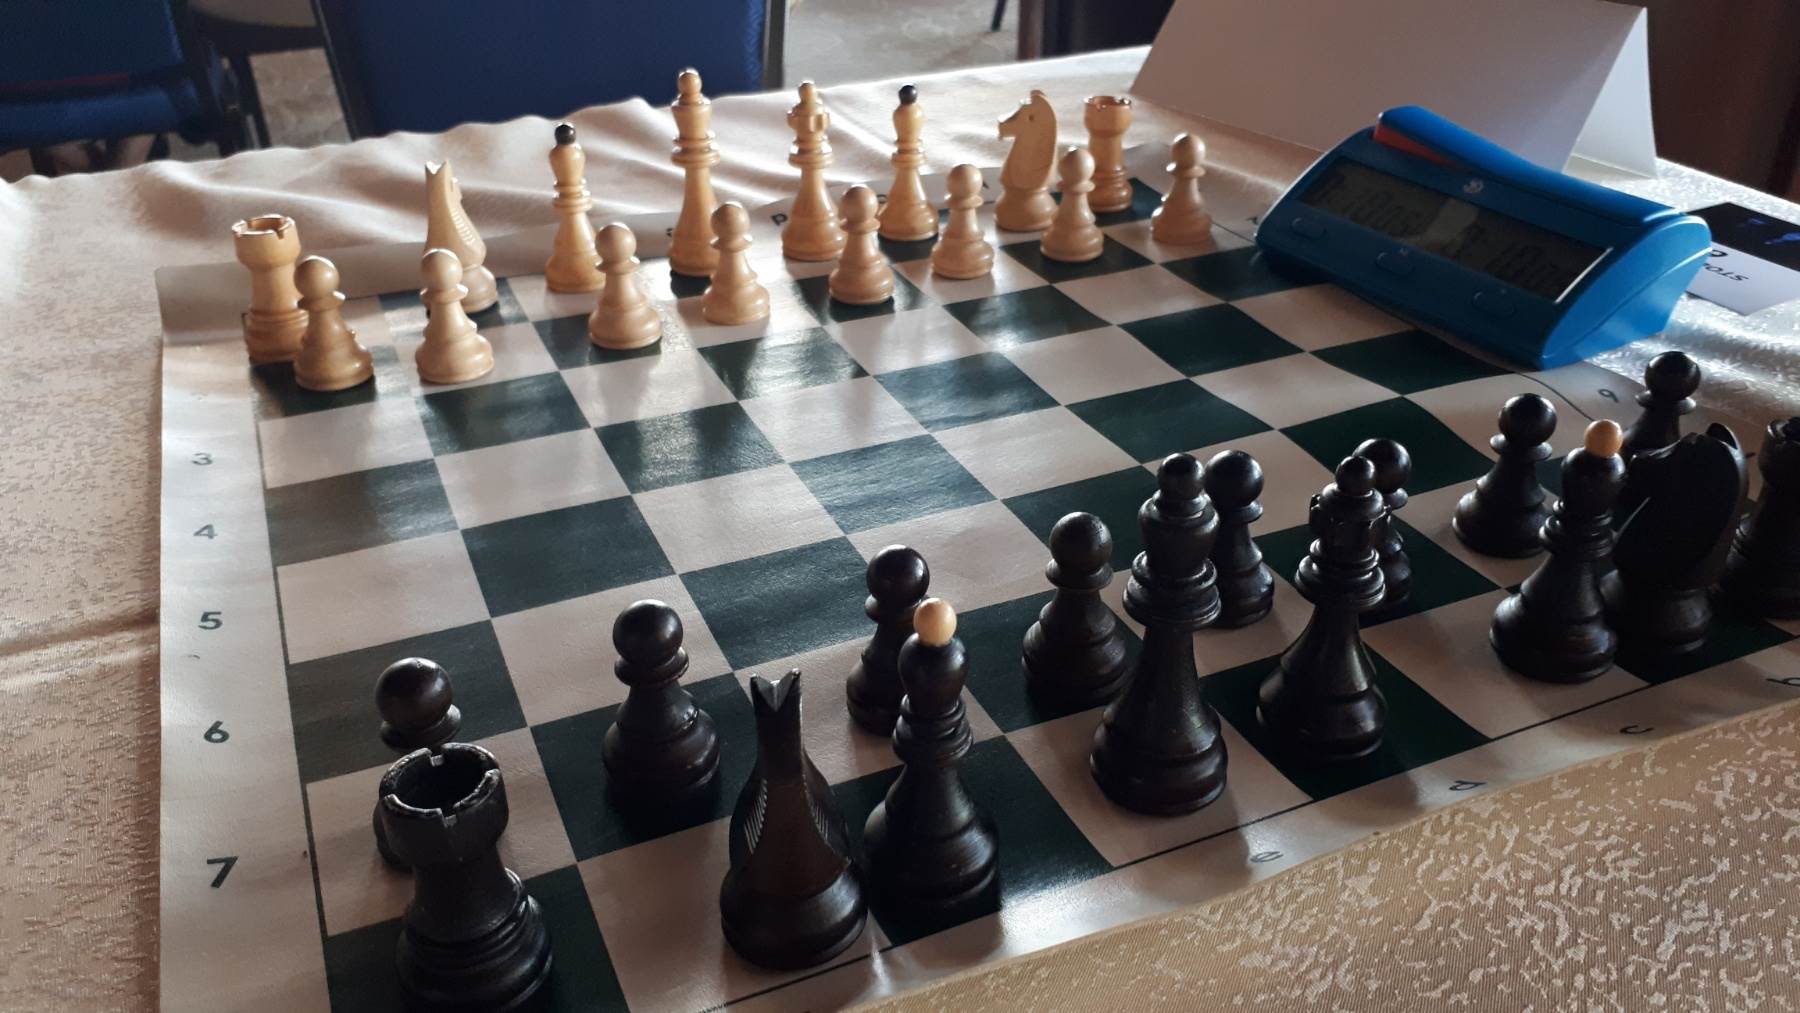  gambit šah turnir u humanitarne svrhe  